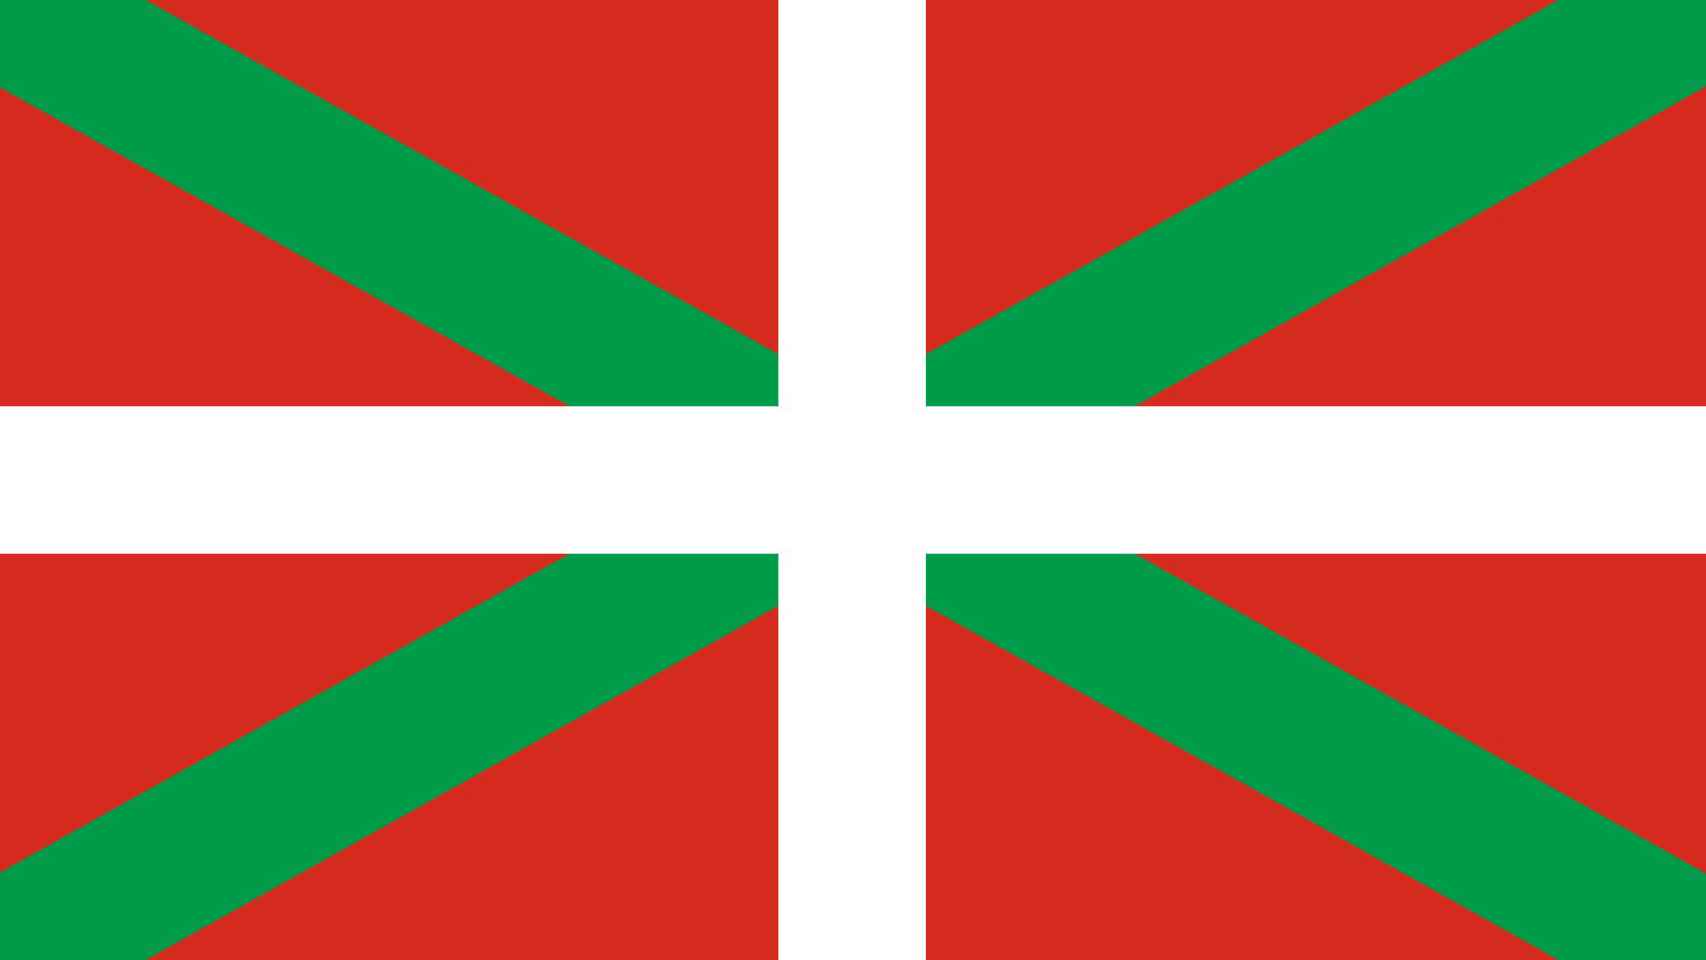 La 'ikurriña', bandera del País Vasco